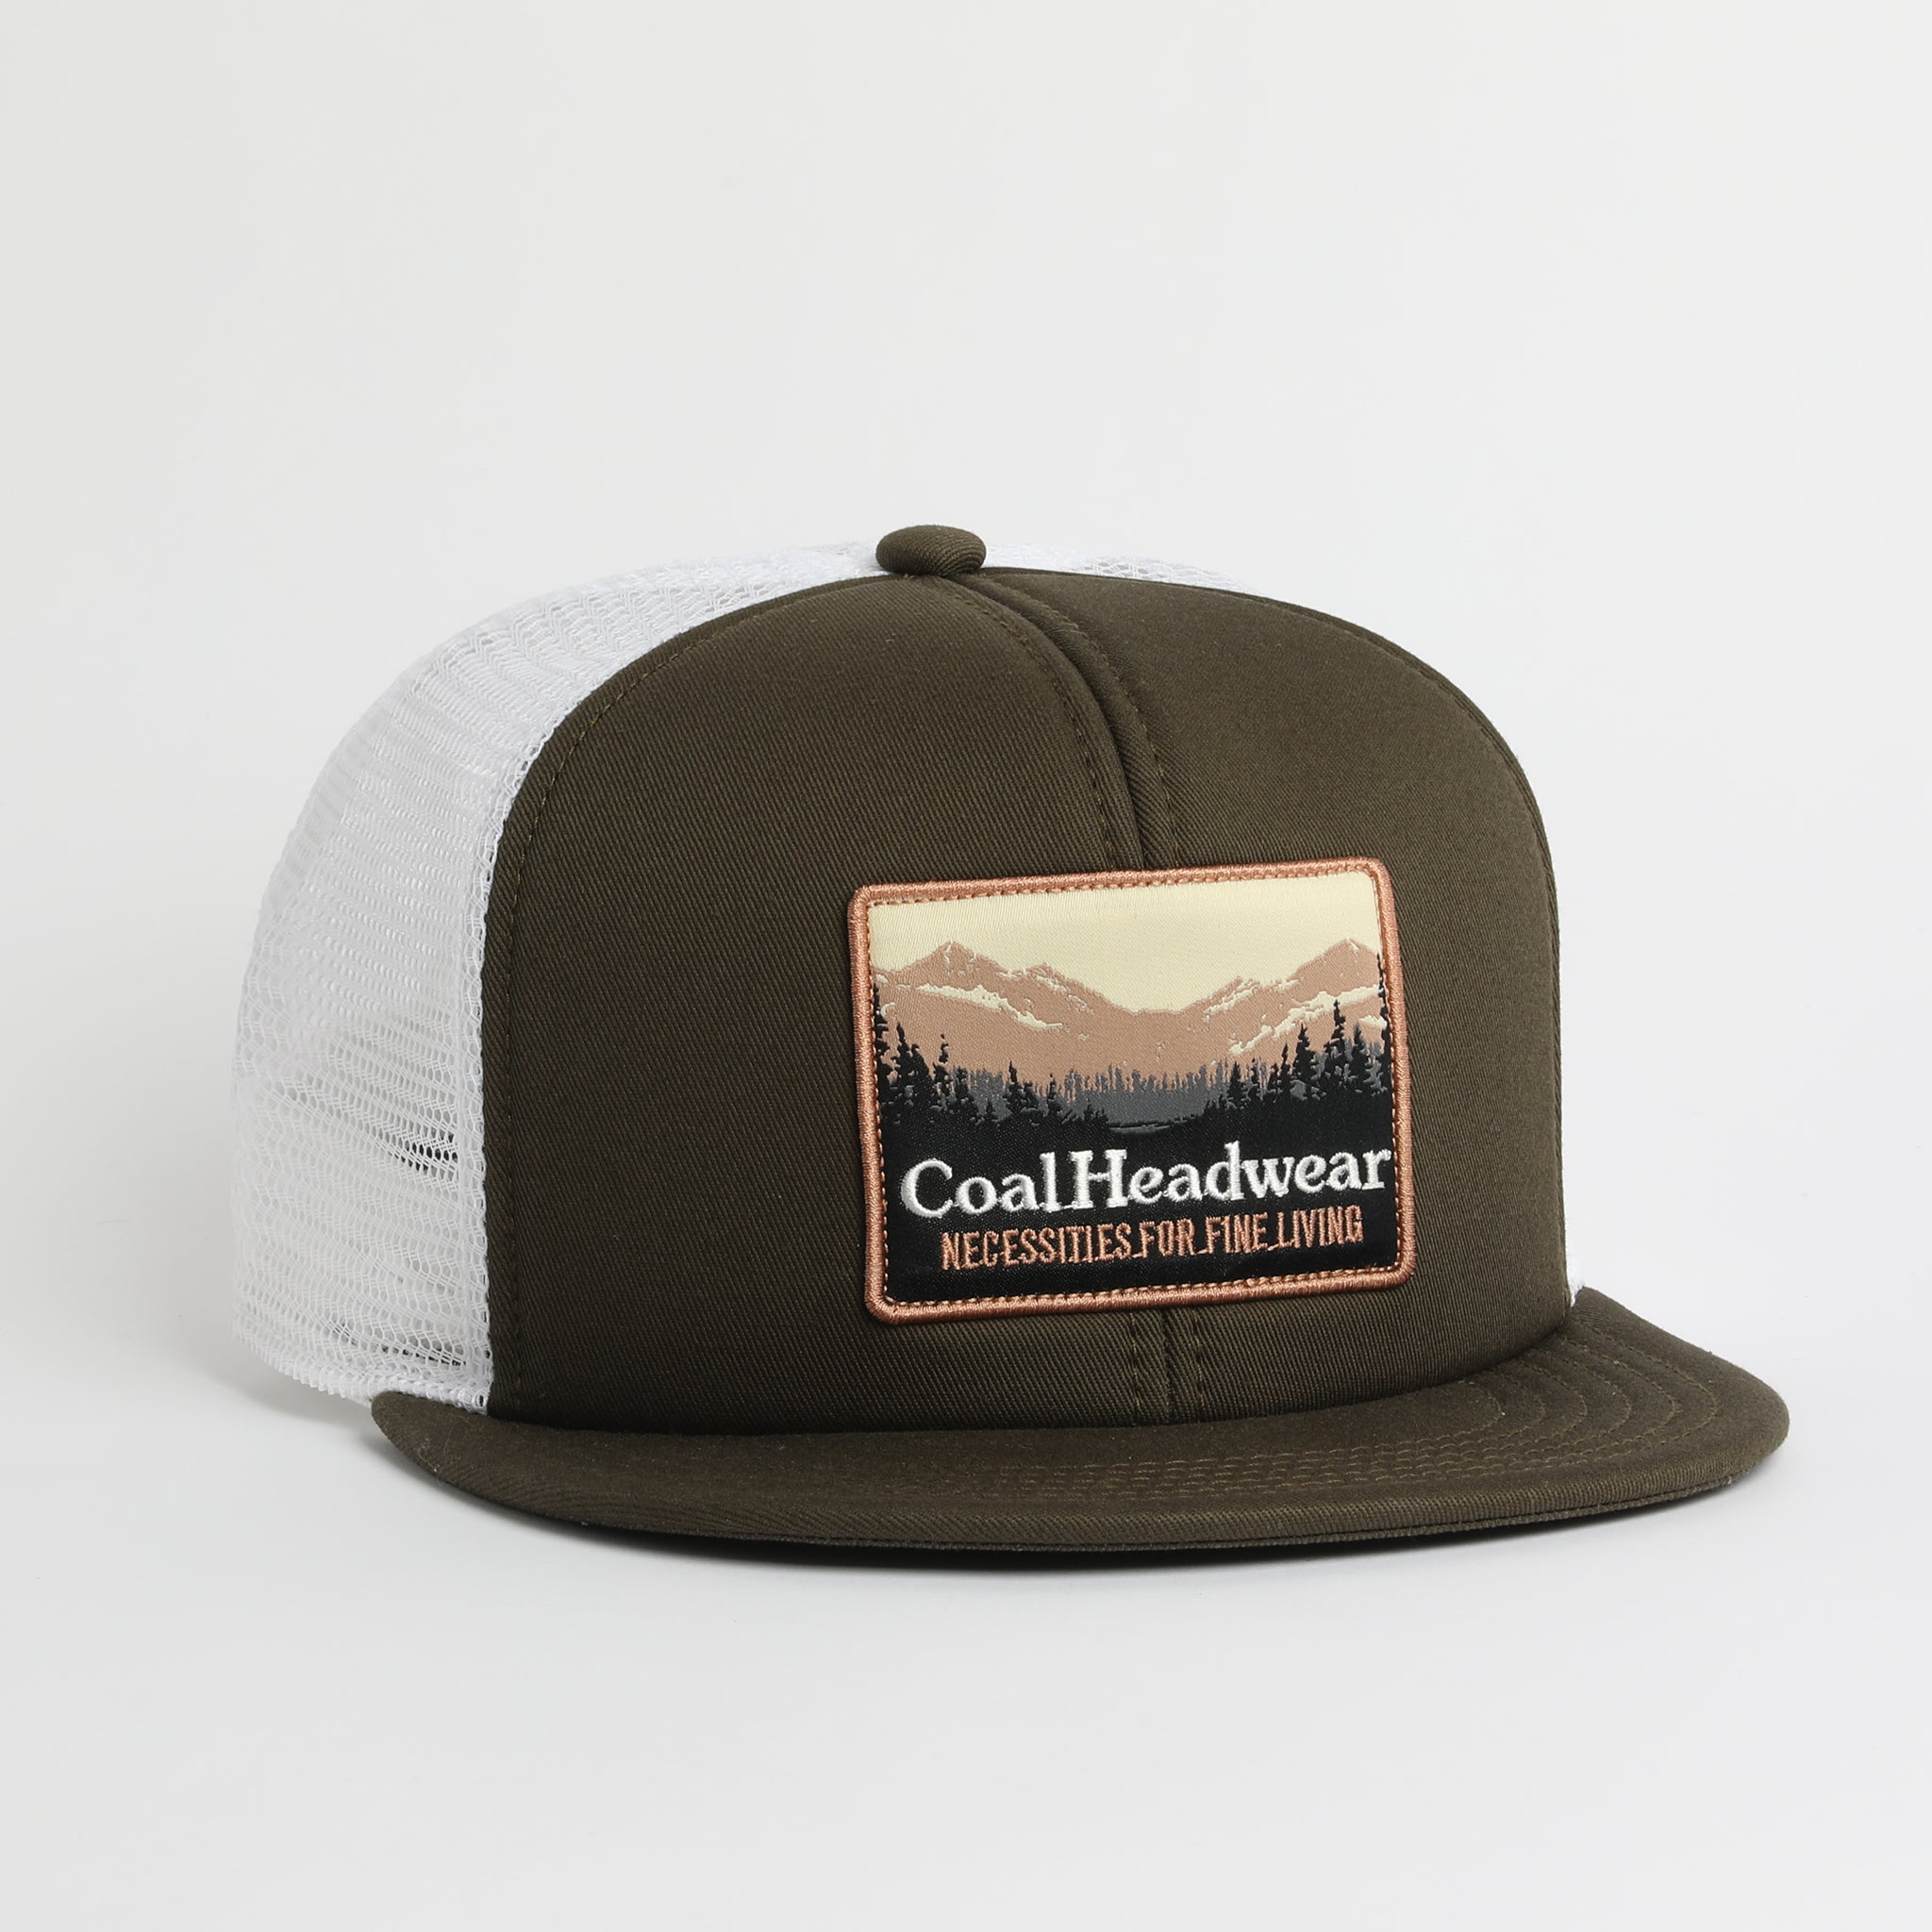 Coal Headwear Lineup Hat - Men